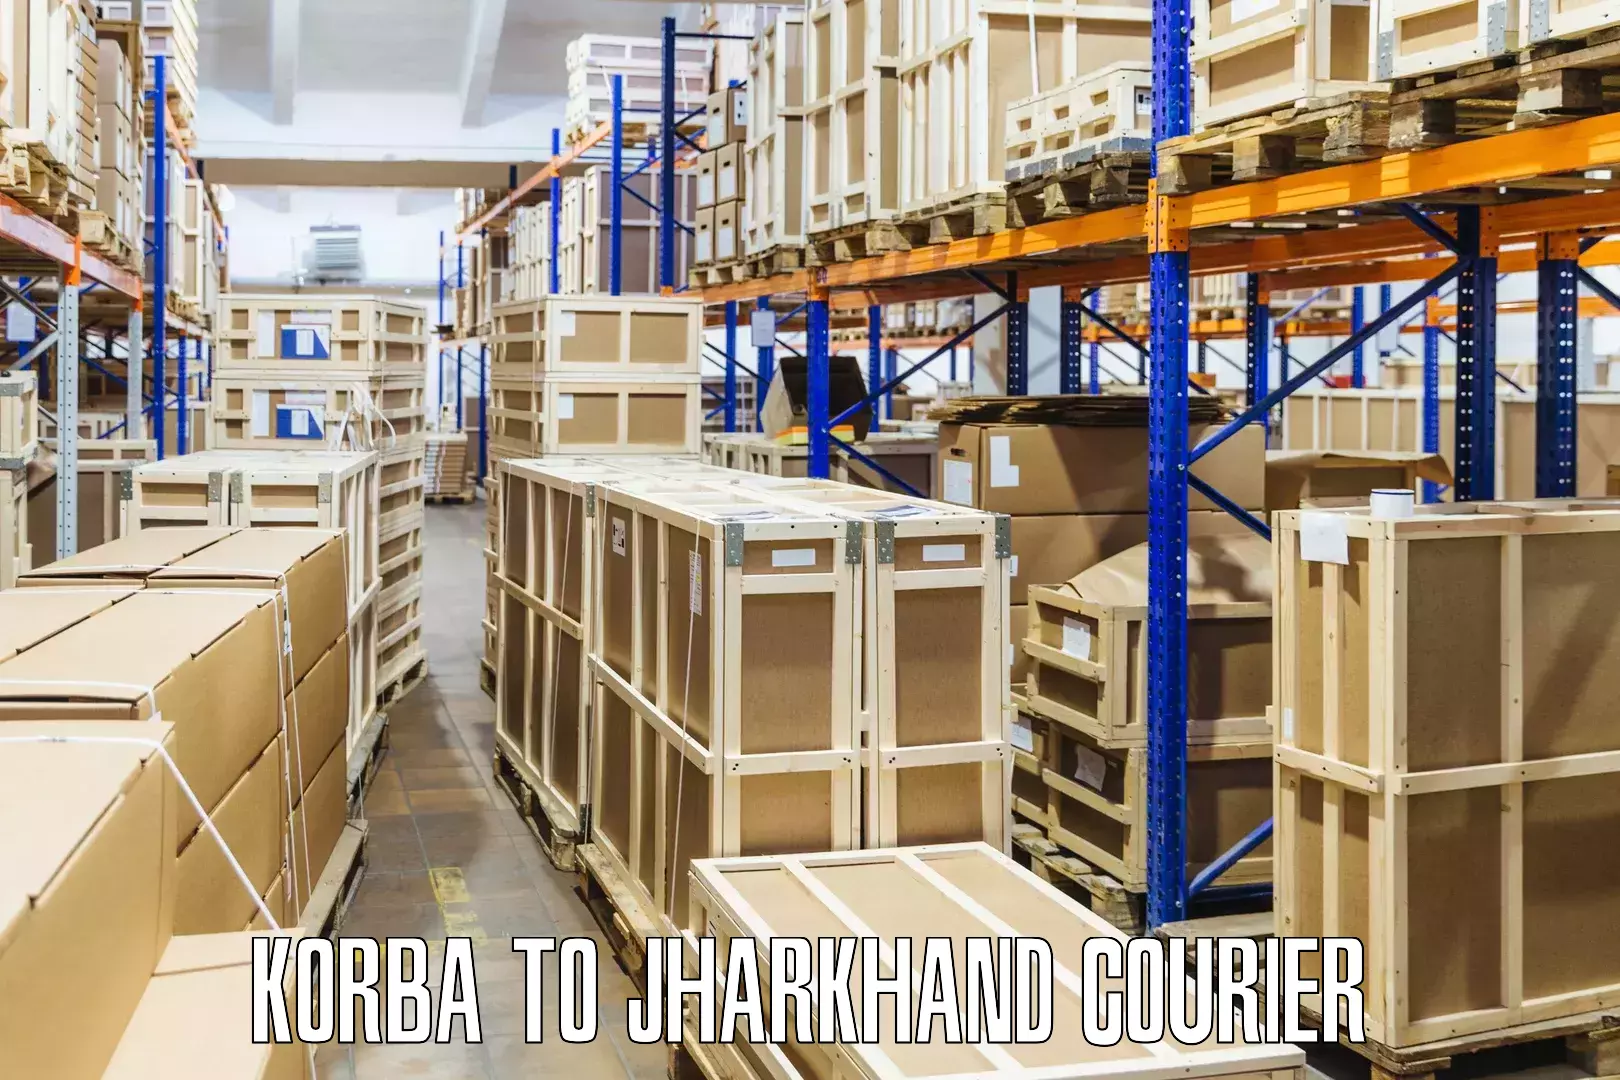 Logistics service provider Korba to Japla